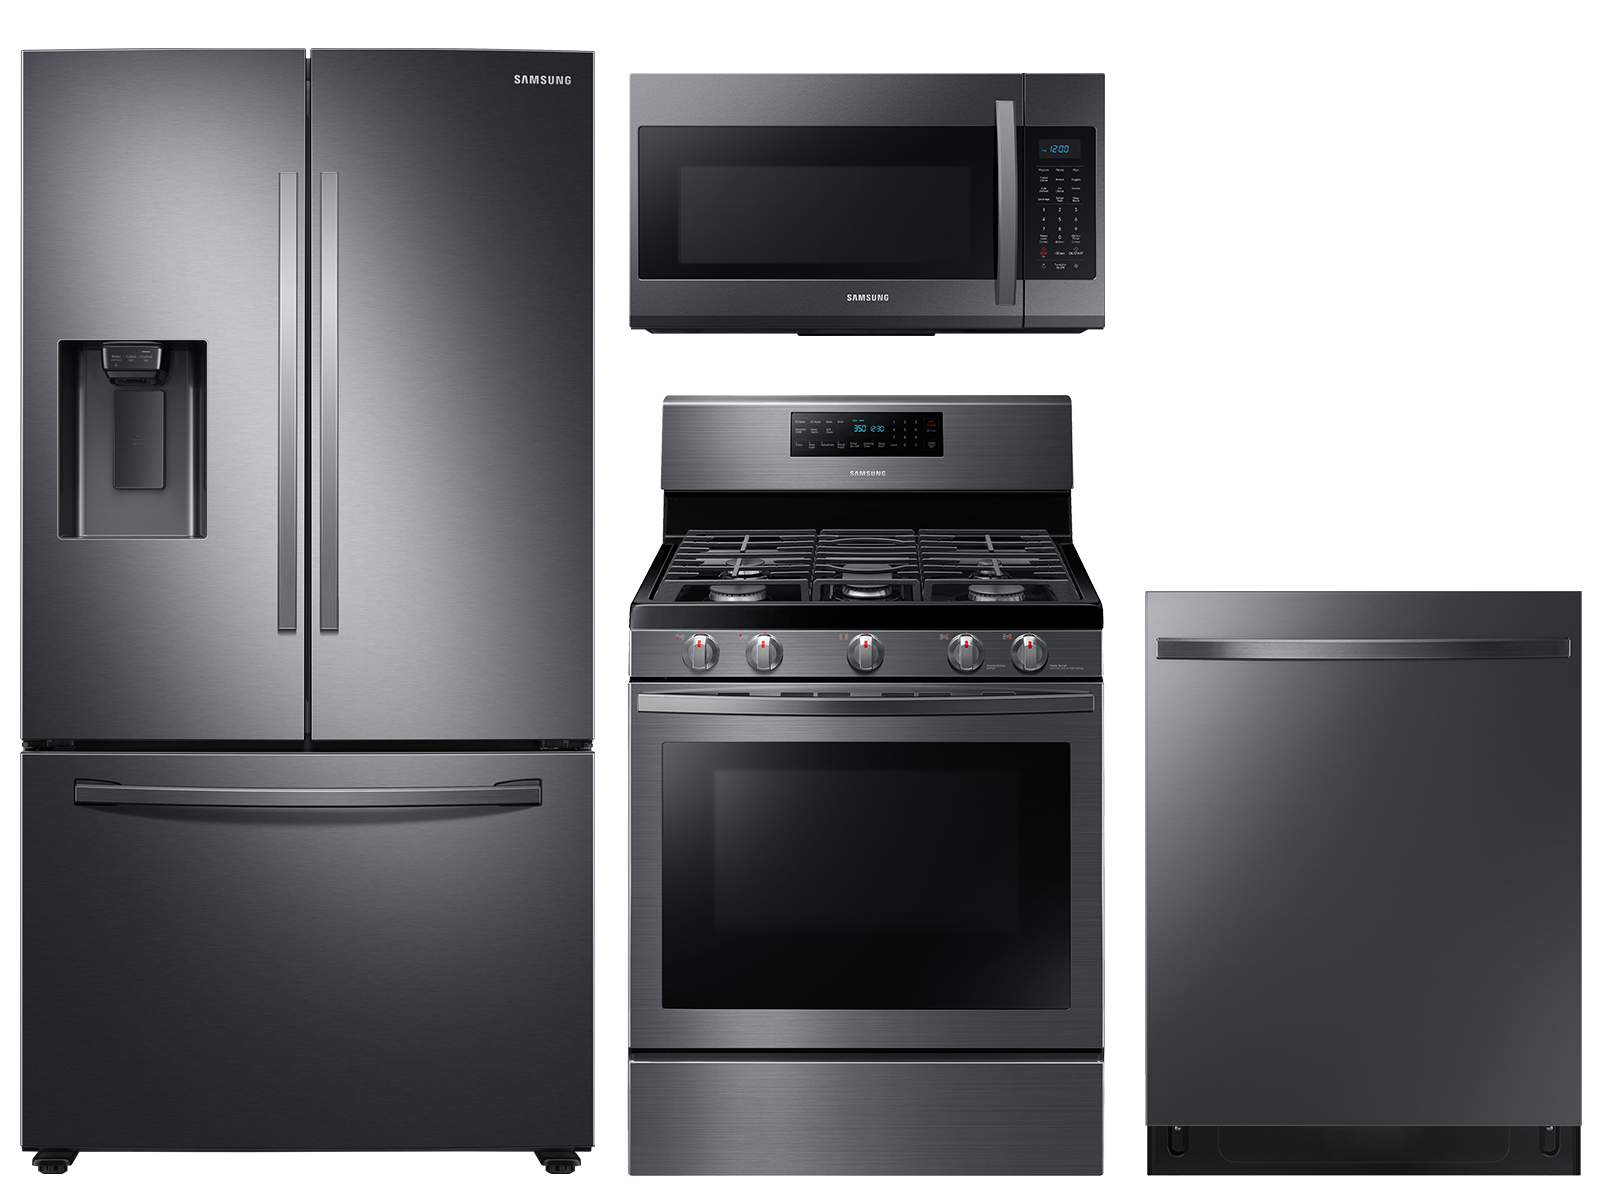 Samsung Large capacity 3-door refrigerator & gas range package in Black stainless(BNDL-1646991127248)